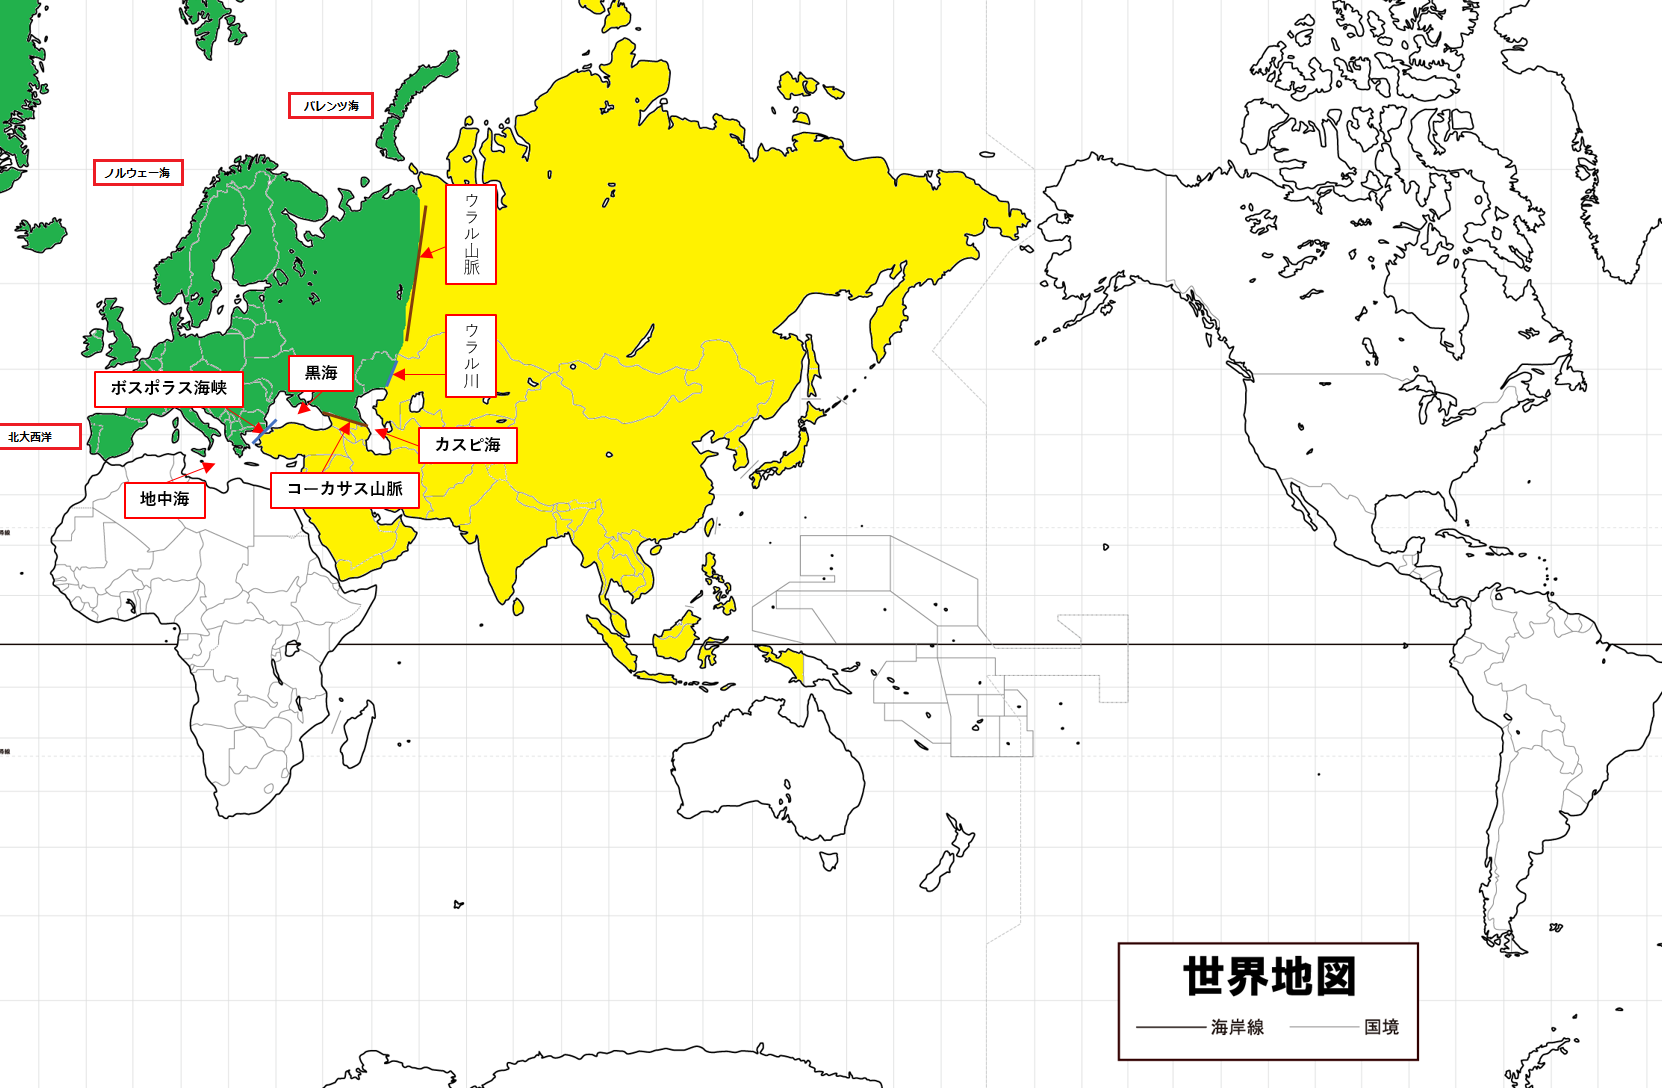 ヨーロッパとアジアの境界とは 色分け地図でわかりやすく